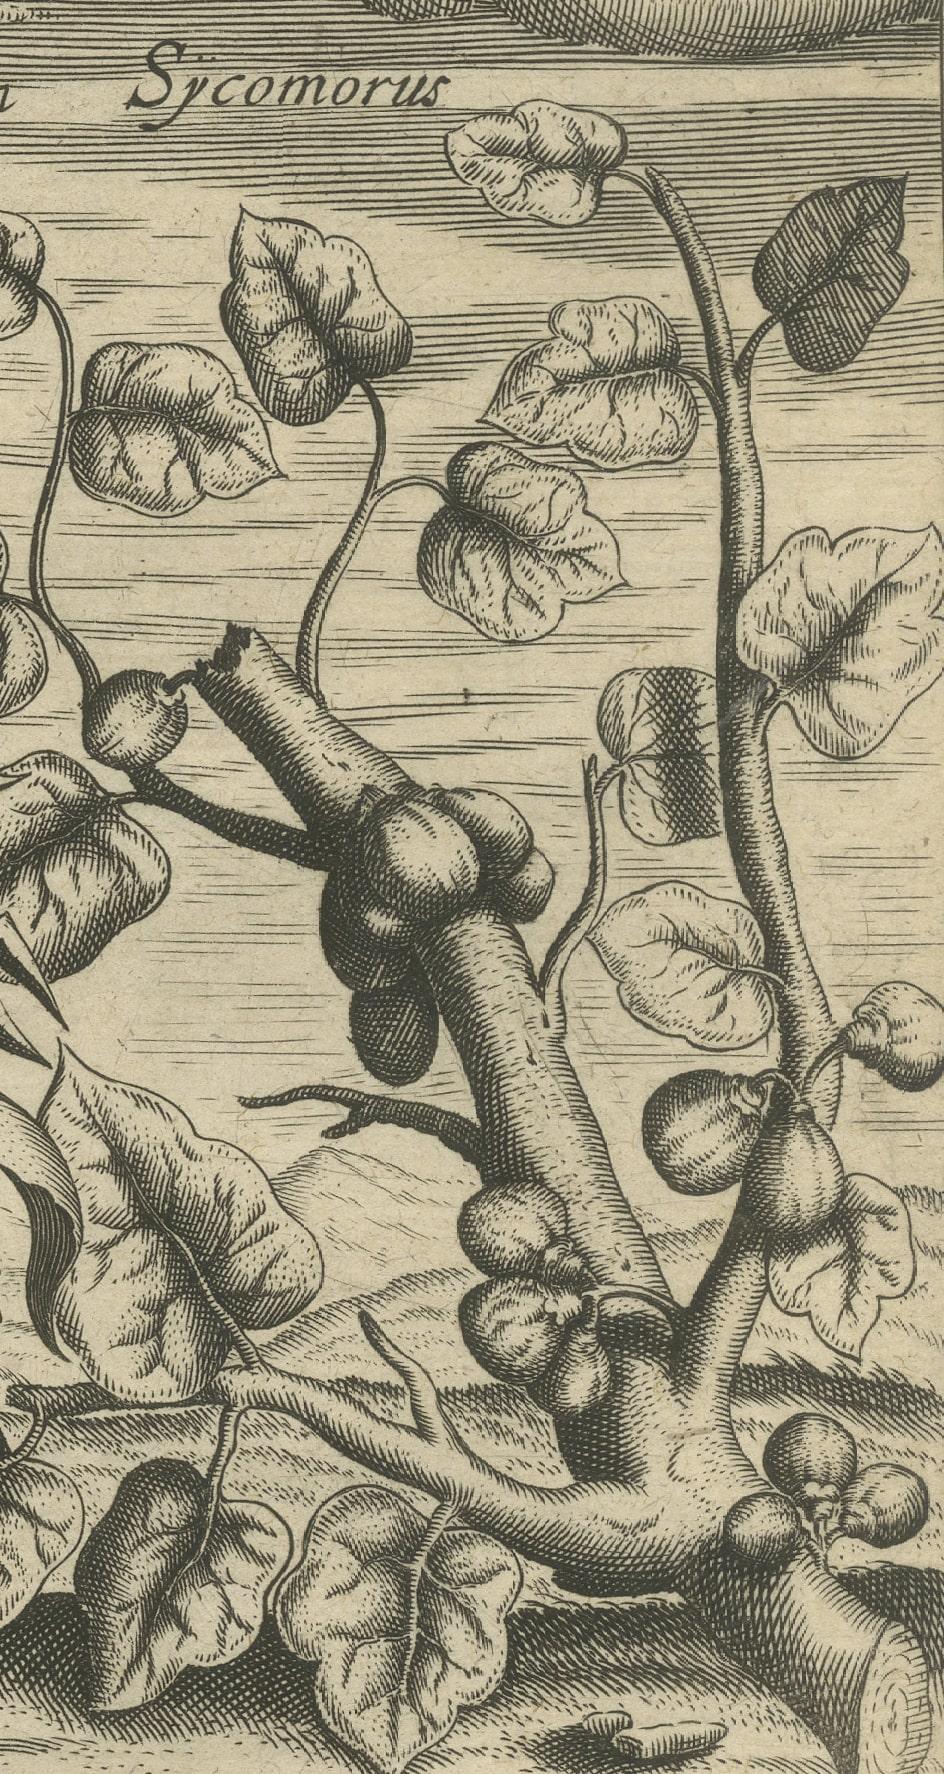 Papier Flora: Aloe, Maguey et Mexican Plants in De Bry's 1601 Work en vente